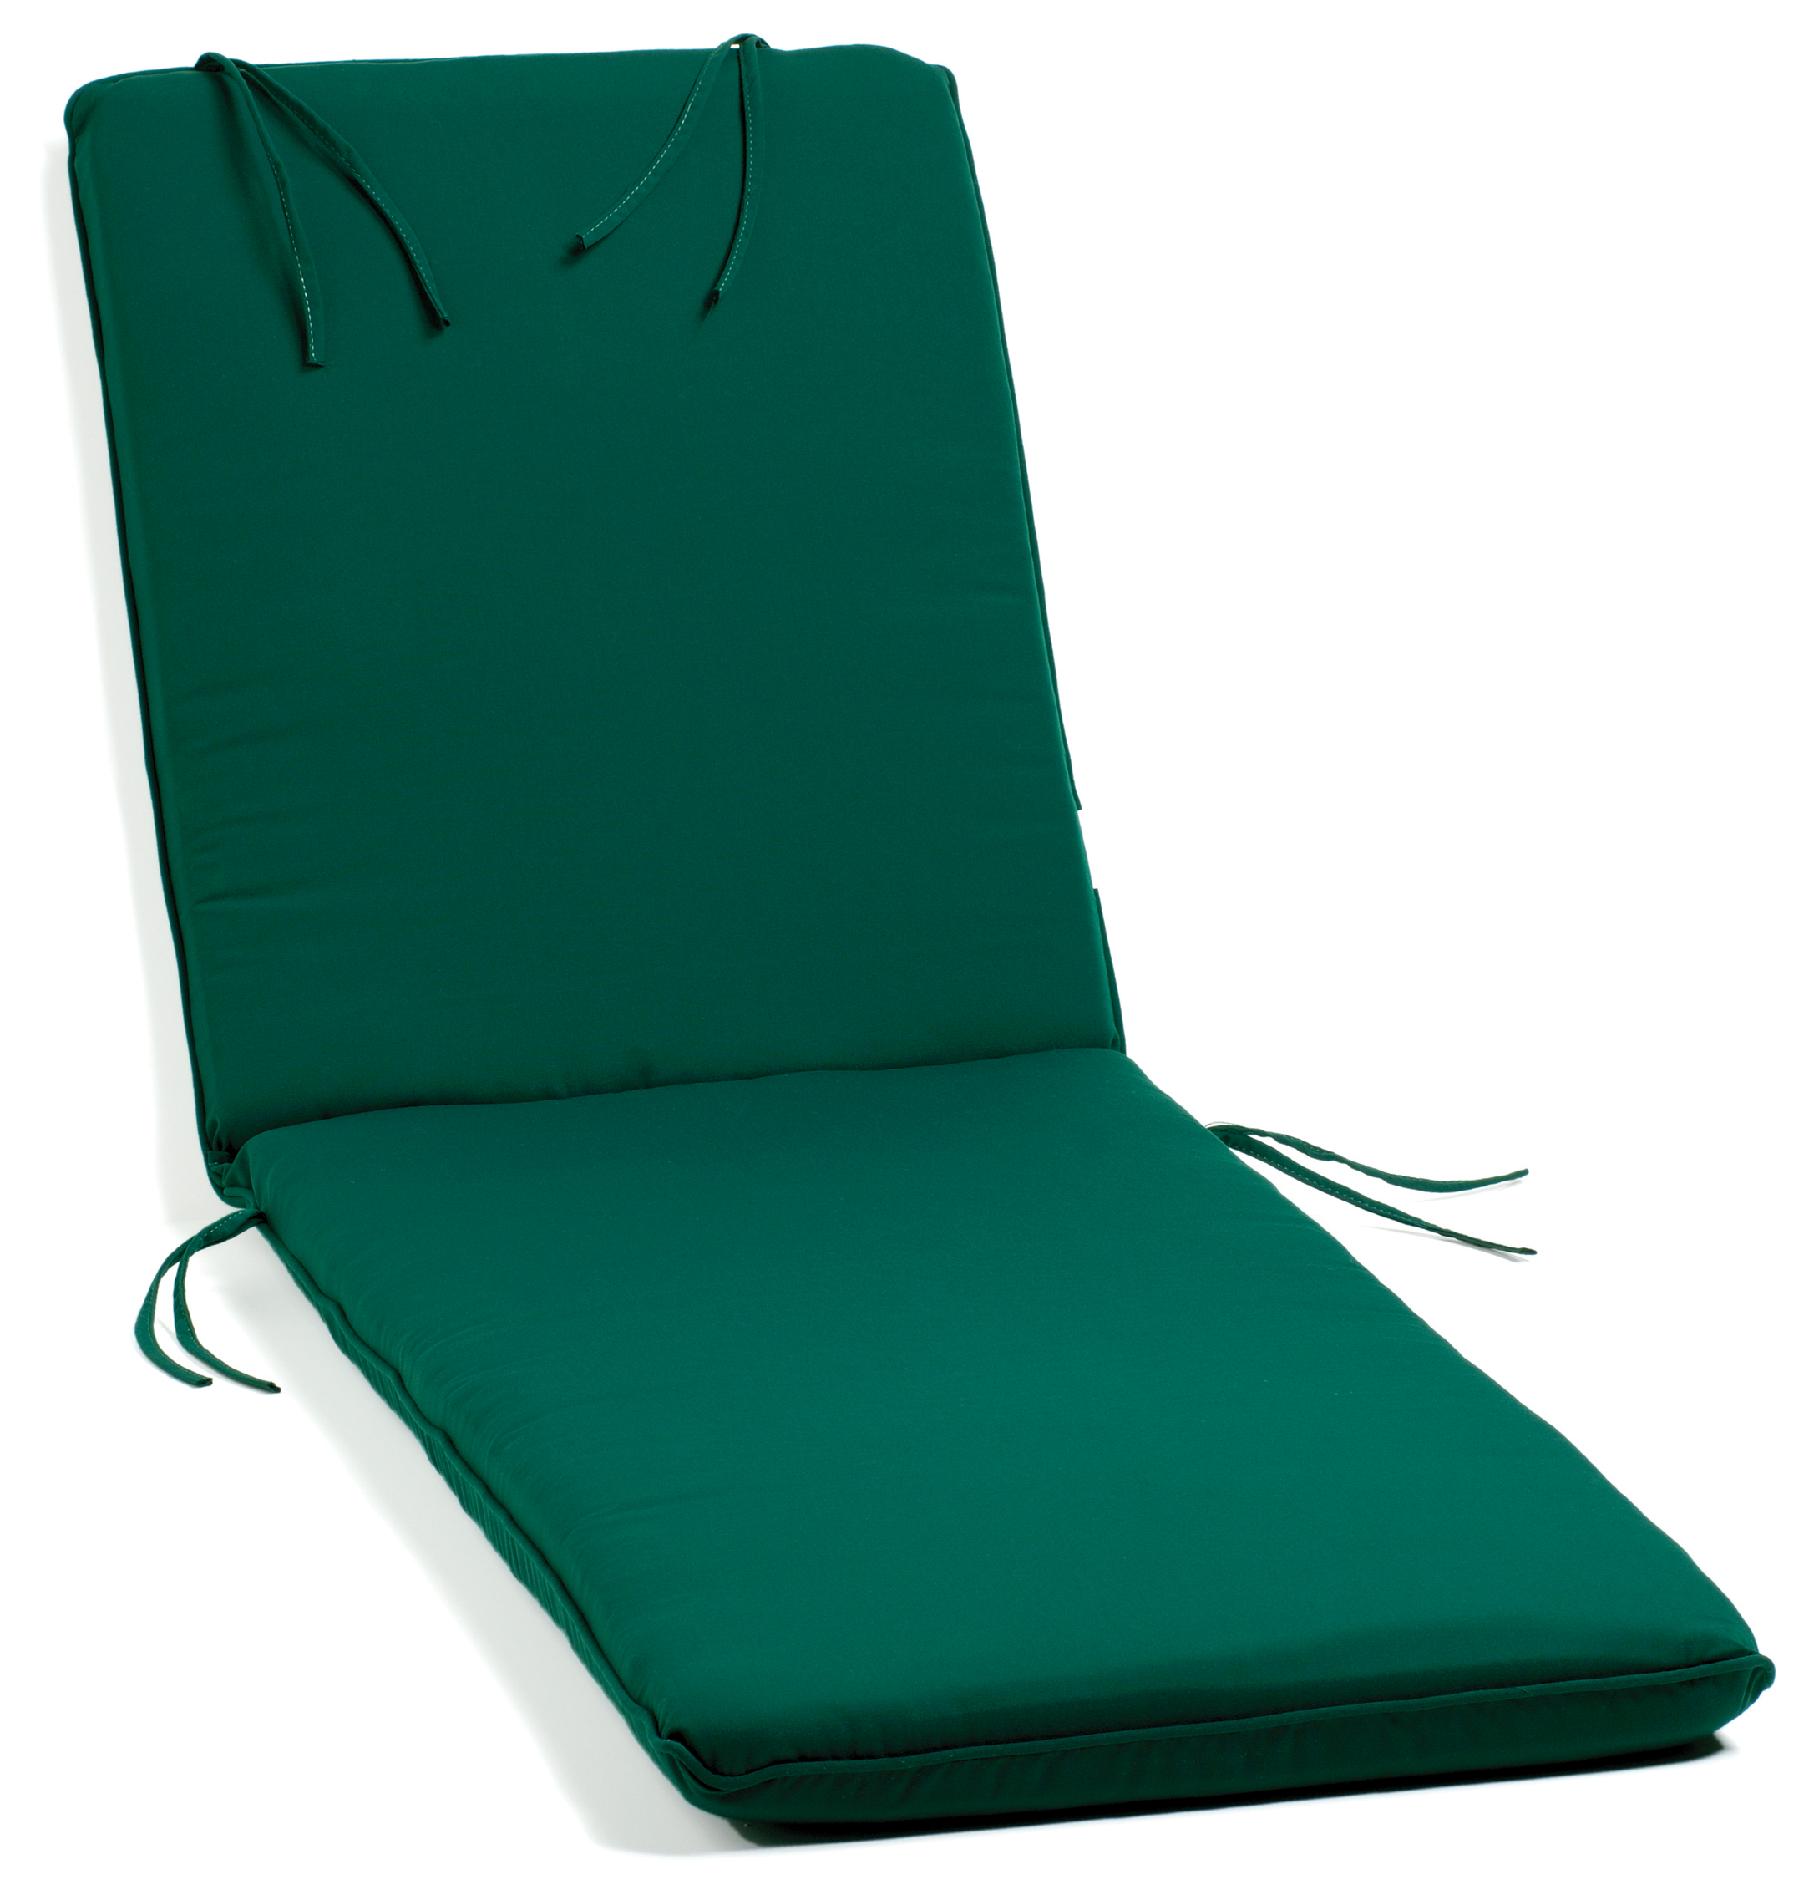 Oxford Chaise Lounge Cushion, Sunbrella&reg; Fabric, Hunter